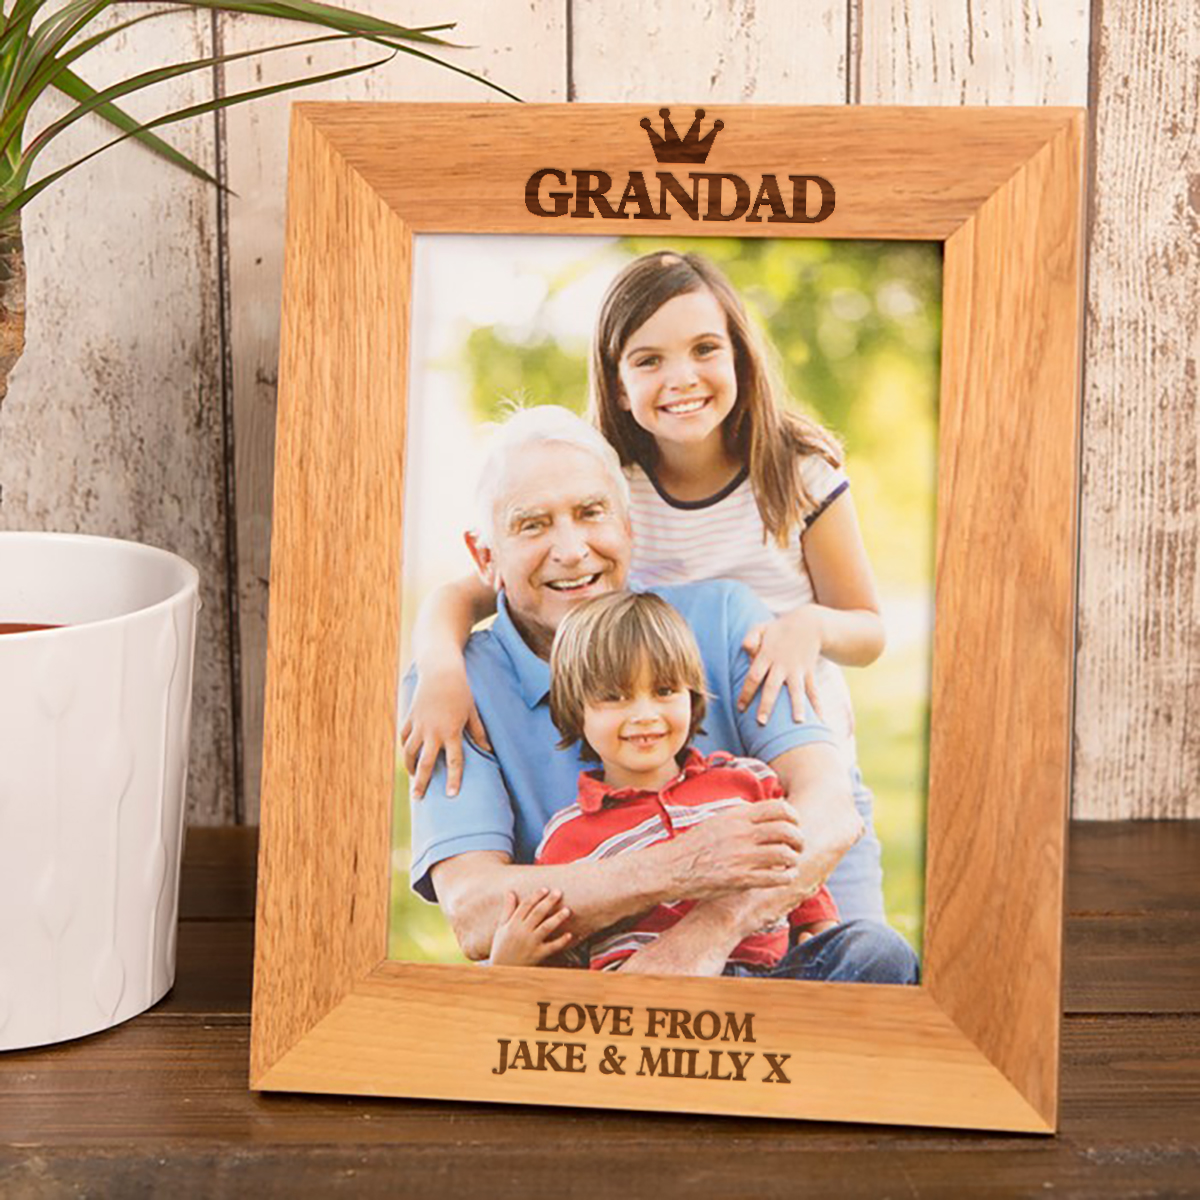 Personalised Engraved Wooden Photo Frame - Grandad Crown